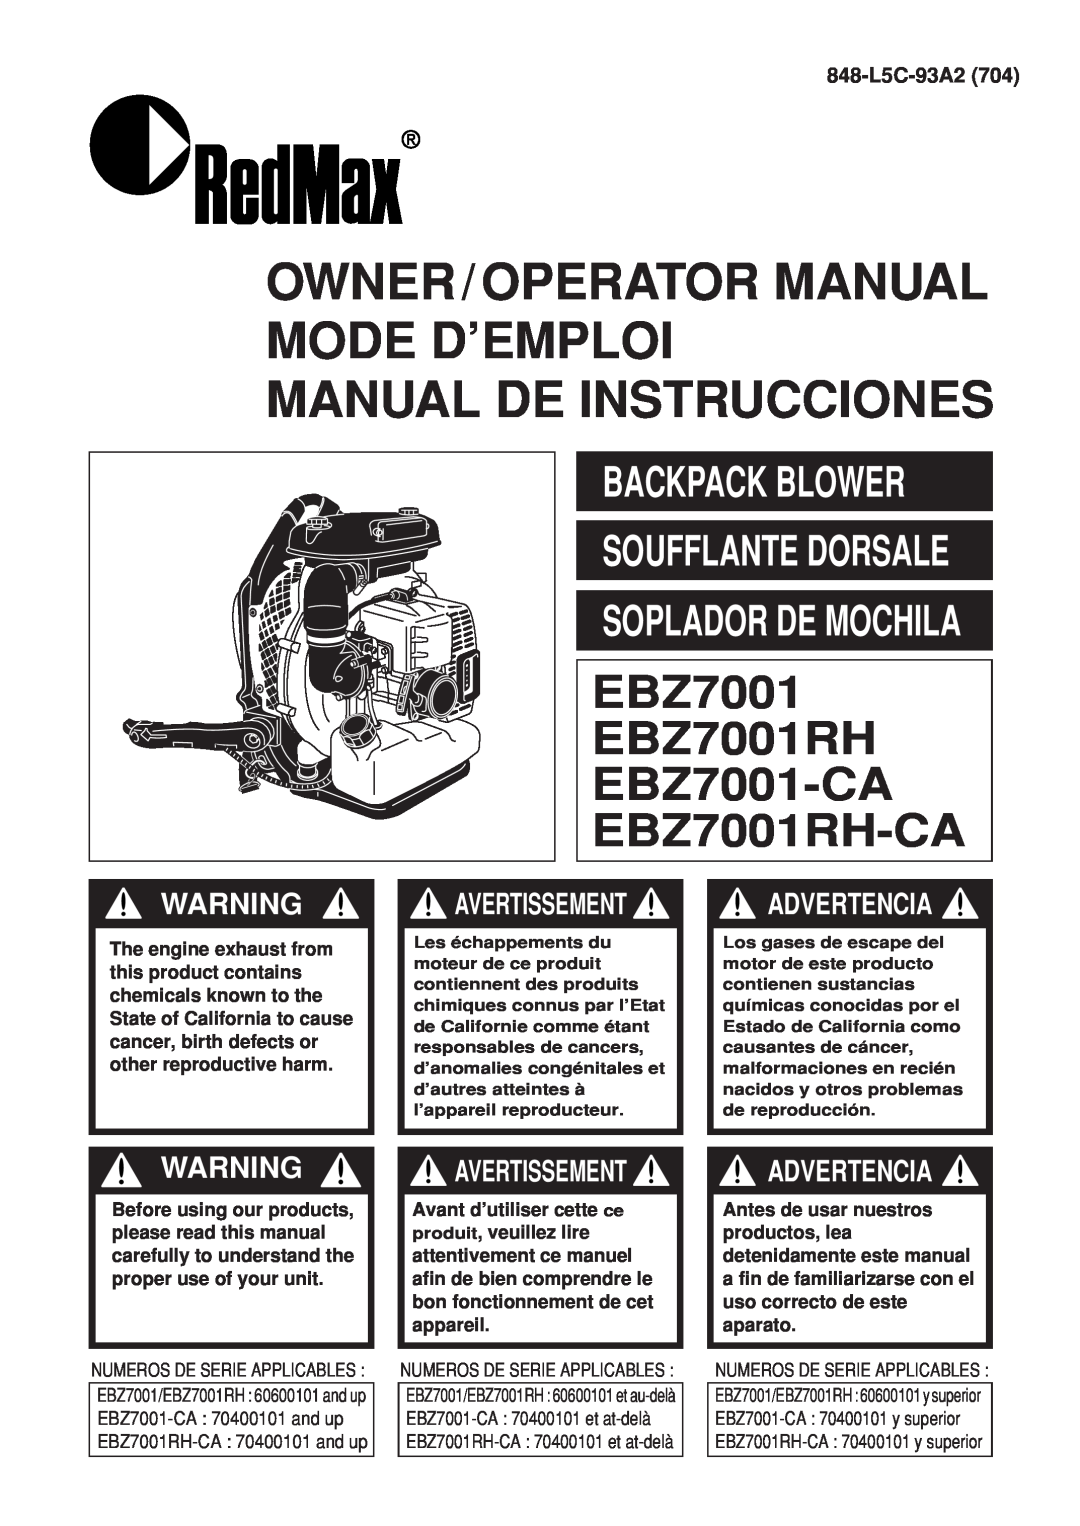 Zenoah EBZ7001RH-CA manual Backpack Blower, 848-L5C-93A2, Owner/Operator Manual Mode D’Emploi Manual De Instrucciones 